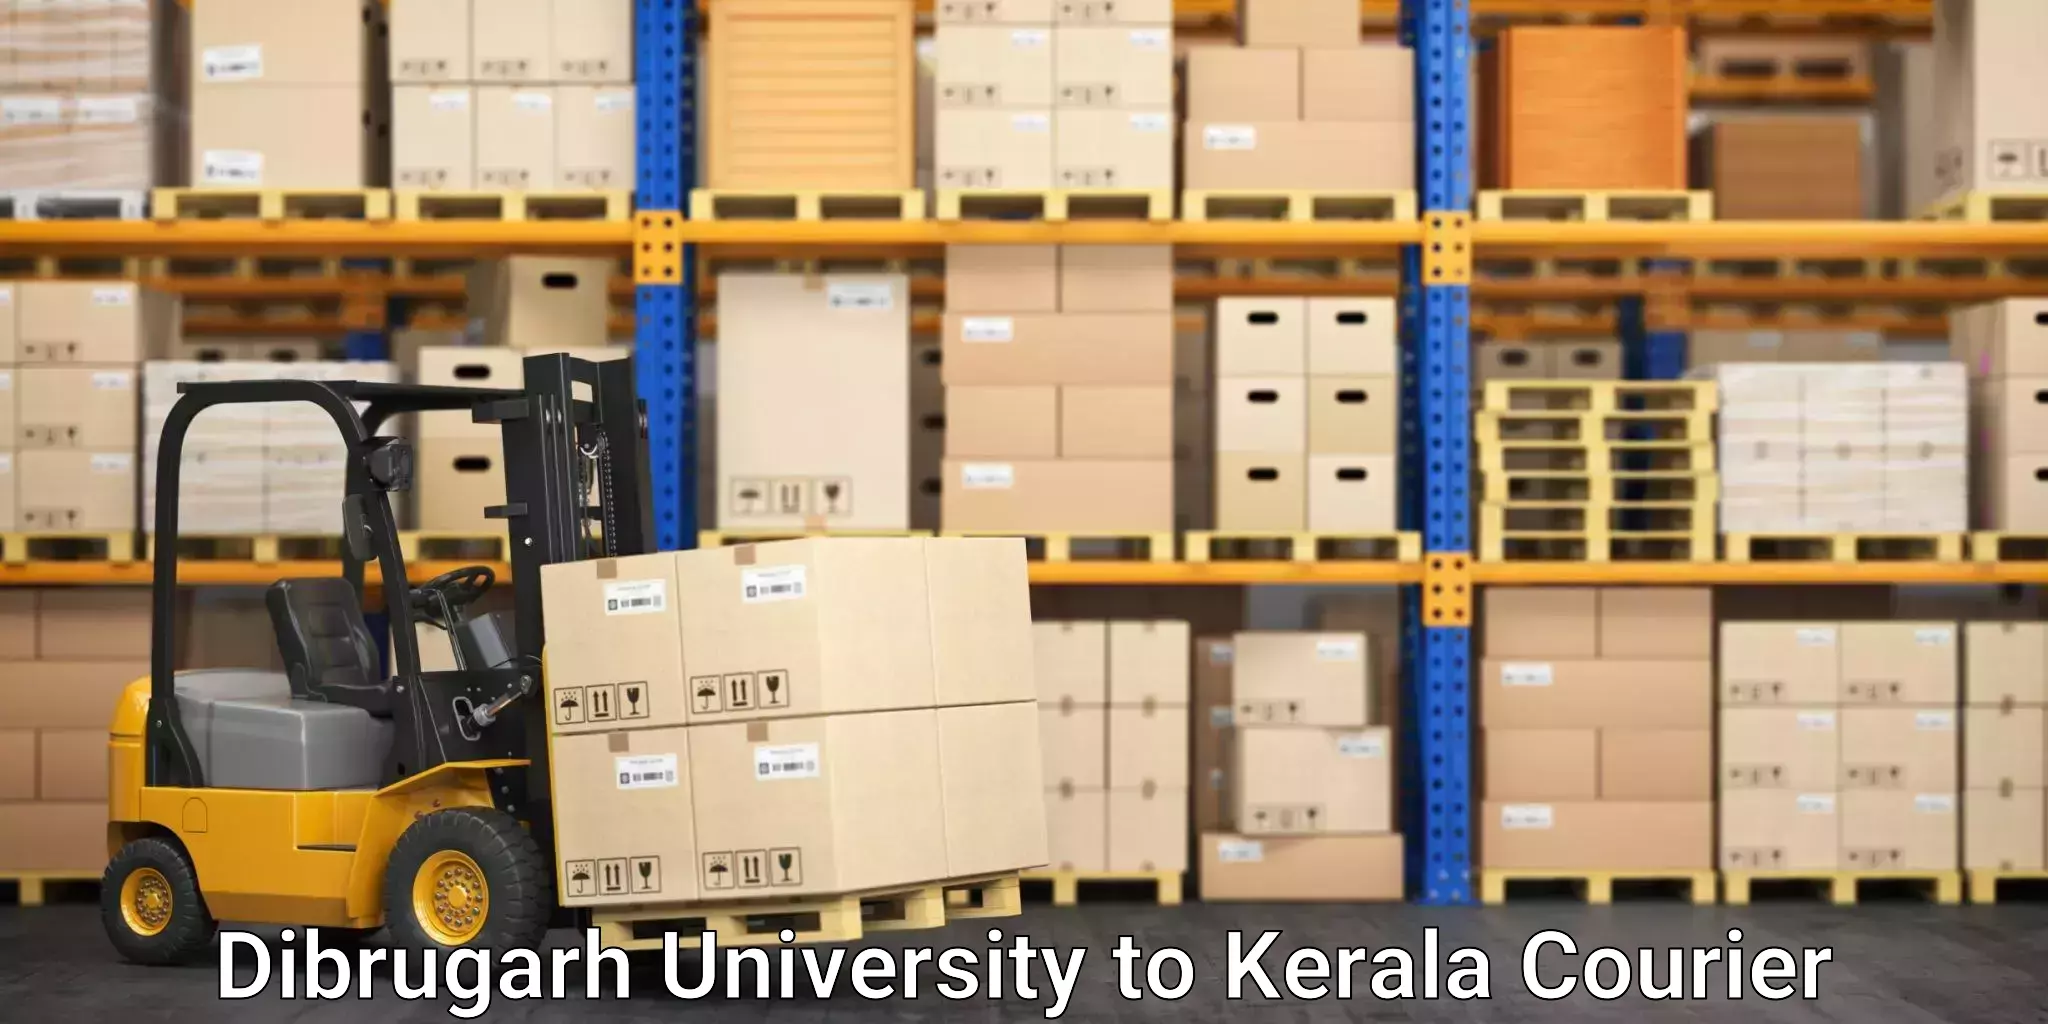 Rural area delivery Dibrugarh University to Cochin Port Kochi